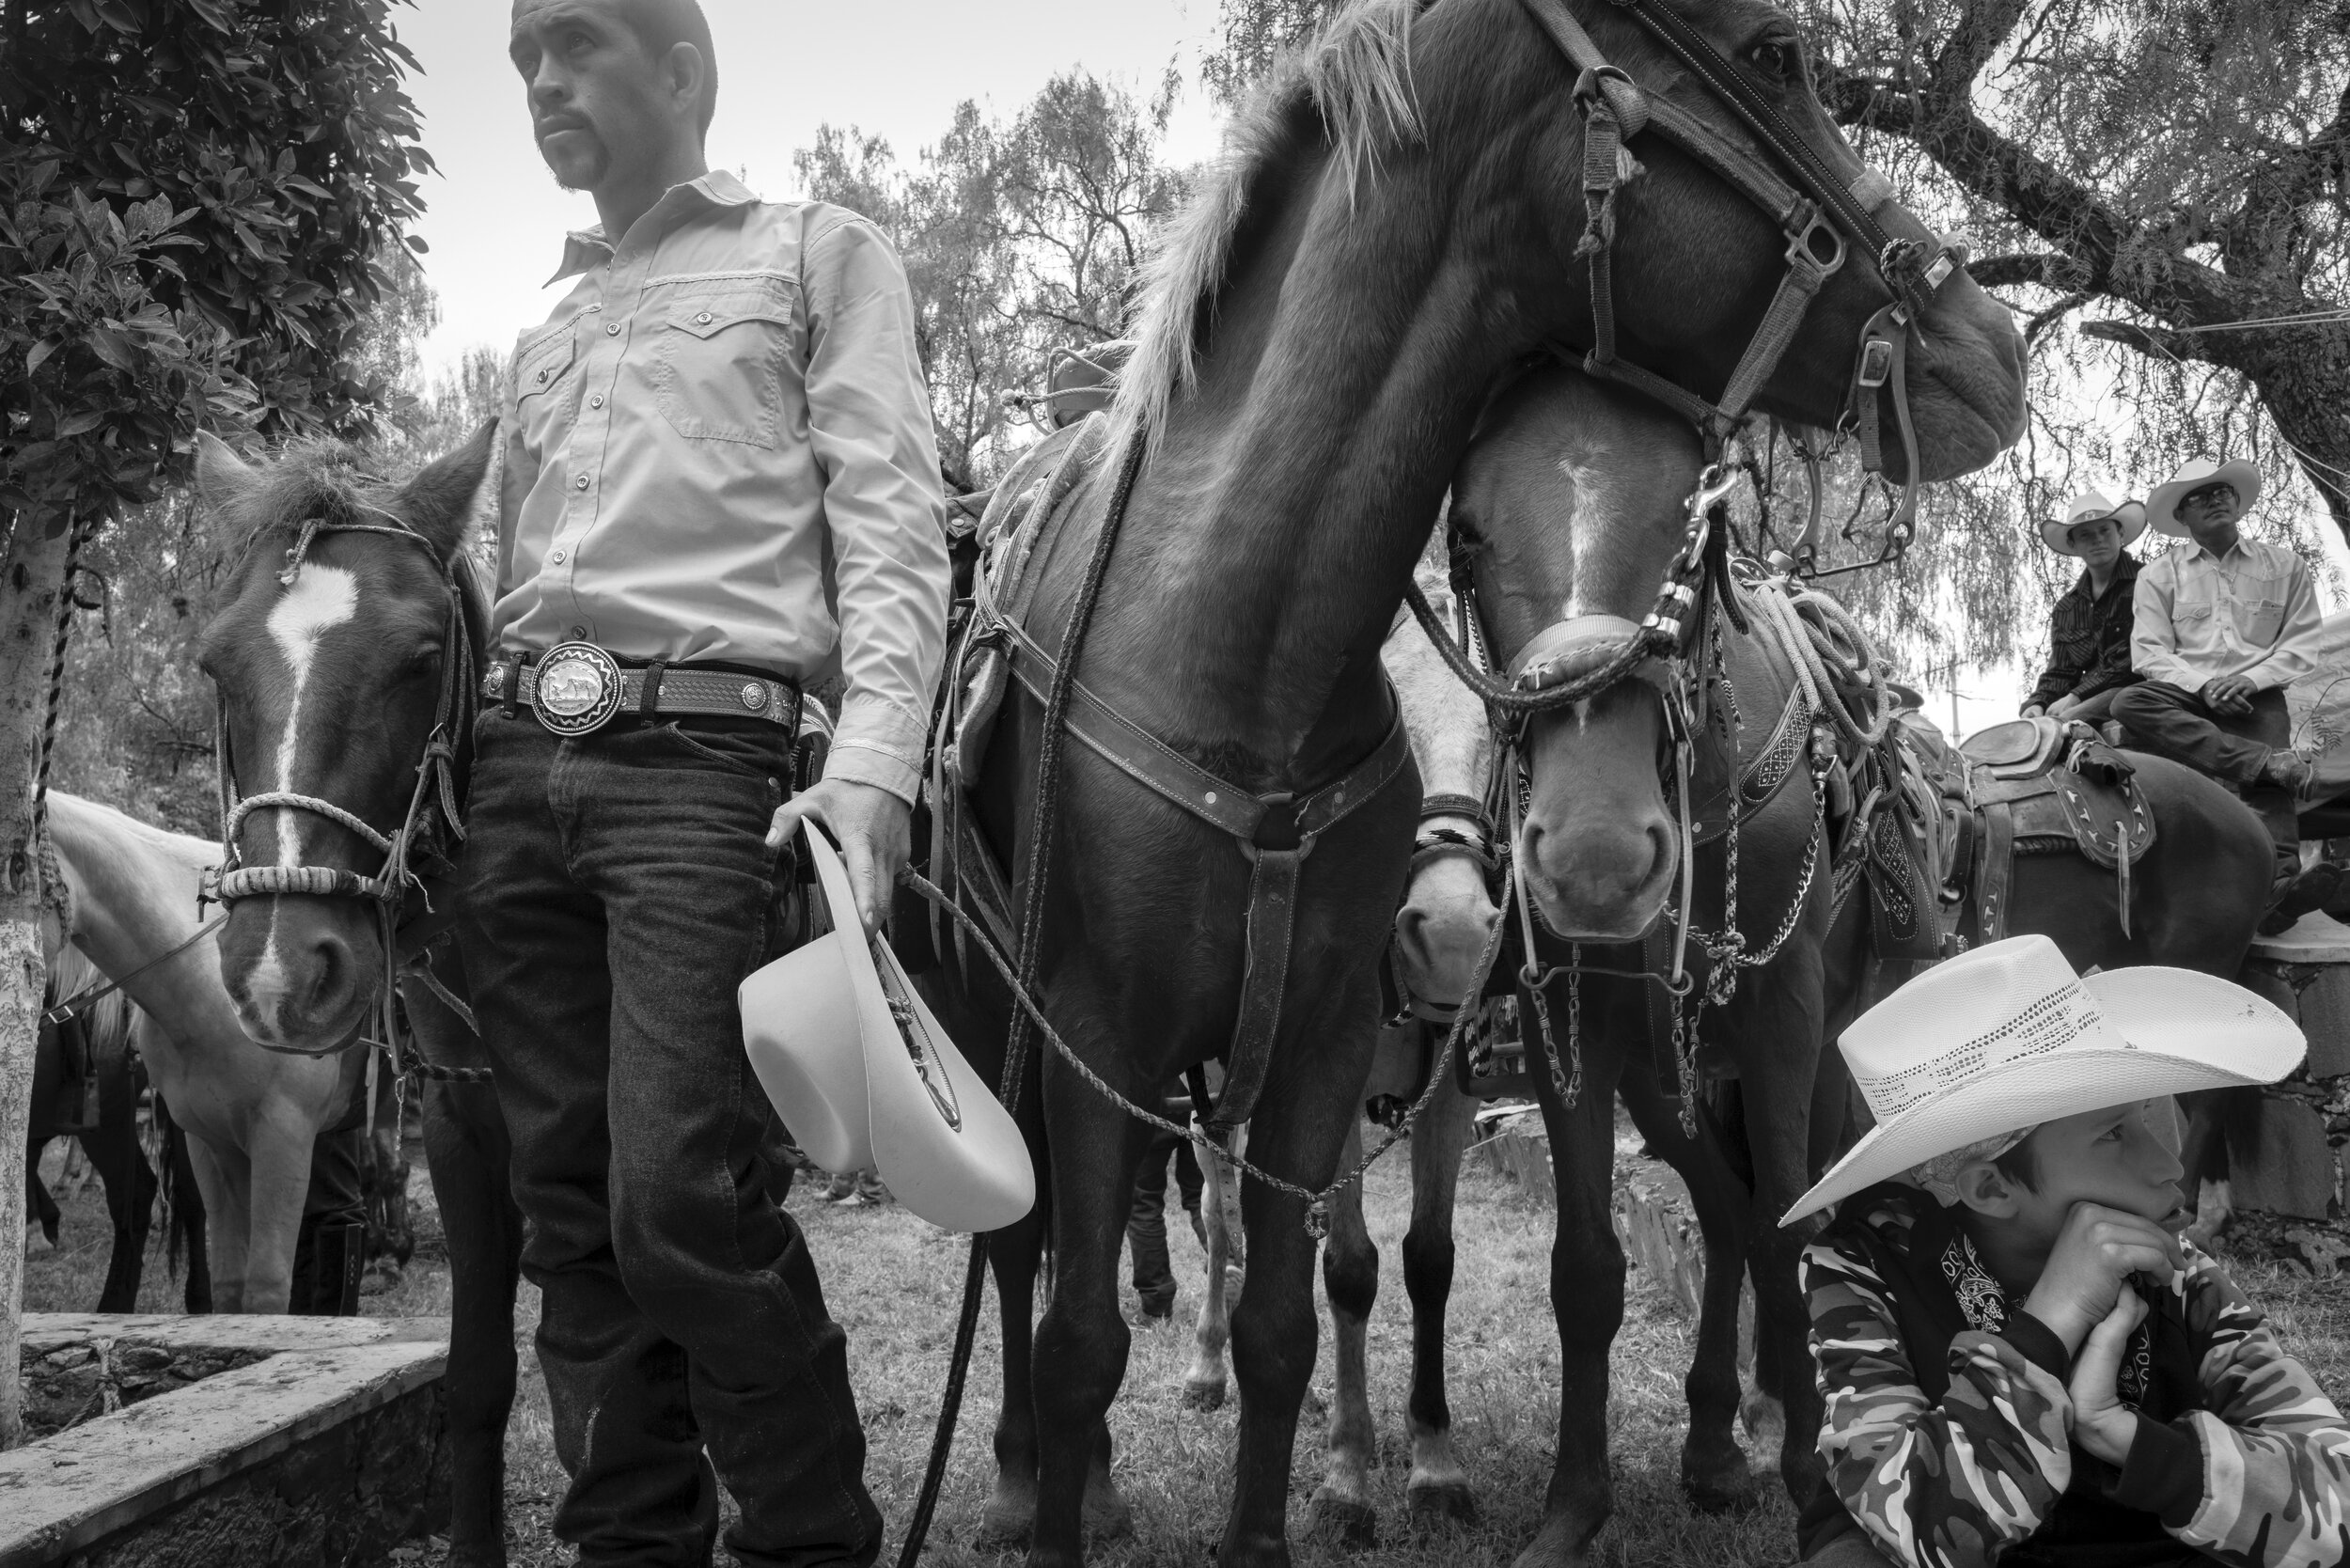  Horse Pilgrimage 2 San Martin de Terreros, Mexico, 2019    3:2  